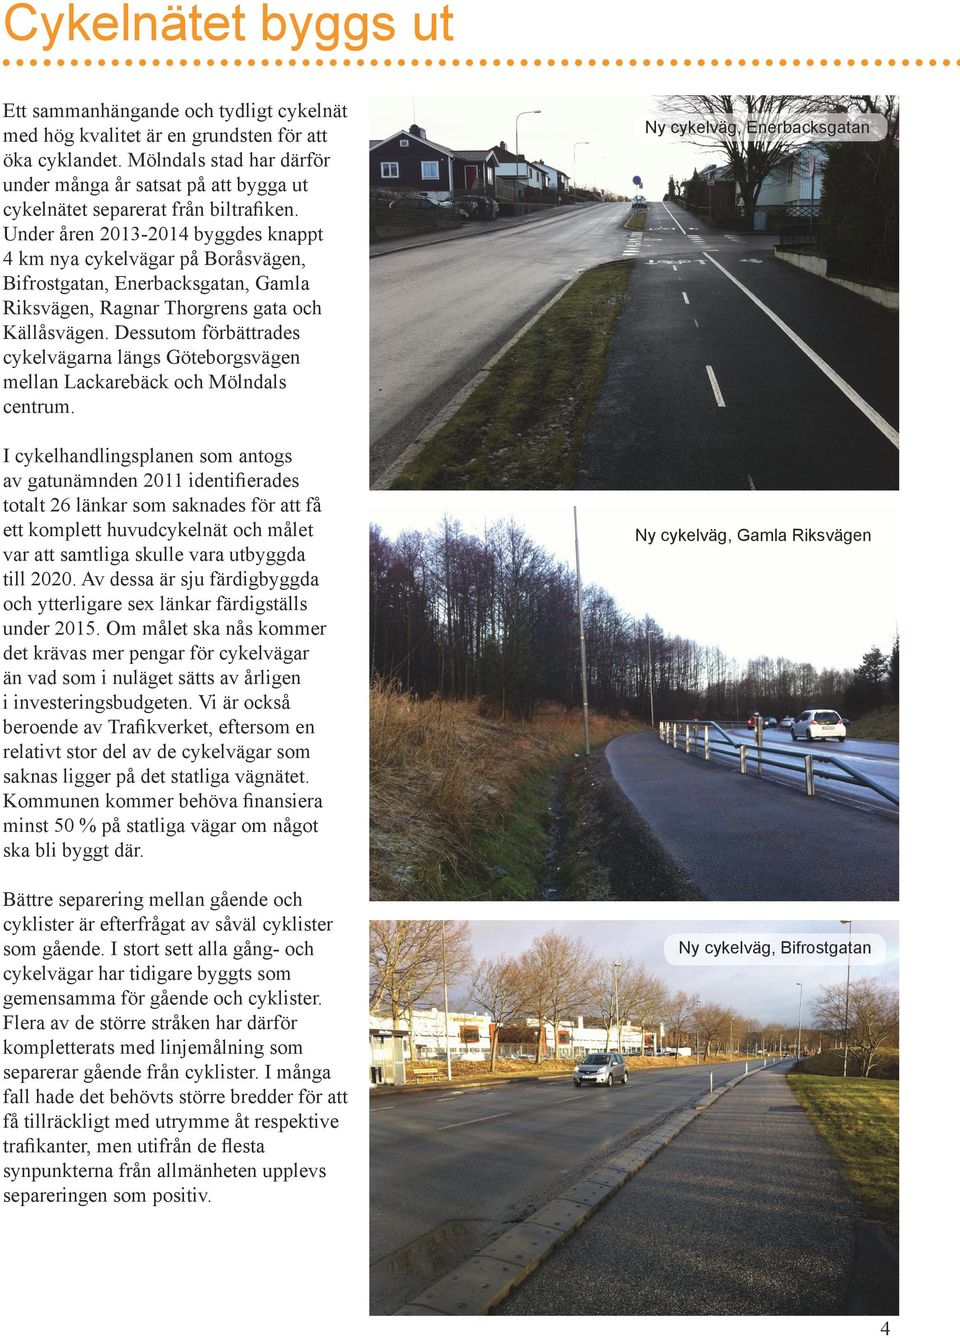 Under åren 2013-2014 byggdes knappt 4 km nya cykelvägar på Boråsvägen, Bifrostgatan, Enerbacksgatan, Gamla Riksvägen, Ragnar Thorgrens gata och Källåsvägen.